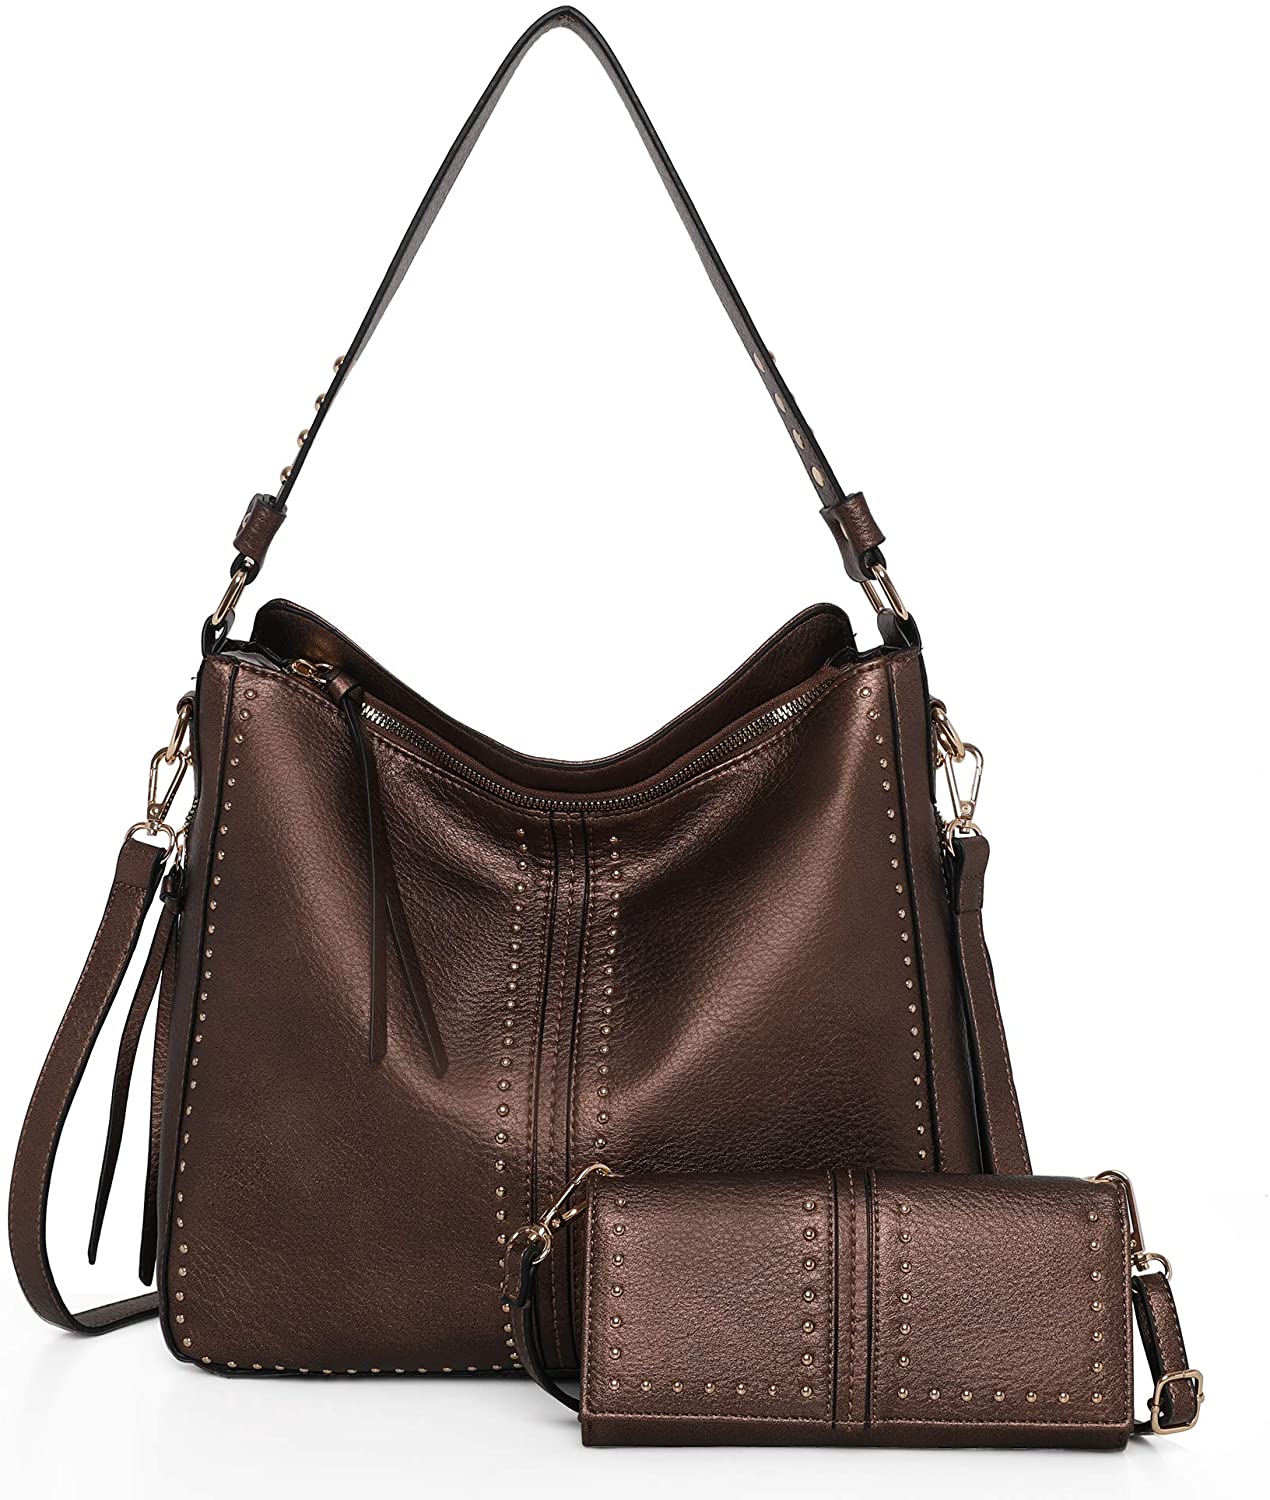 Montana West Large Leather Hobo Handbag for Women Concealed Carry Studded Shoulder Bag Crossbody Purse 